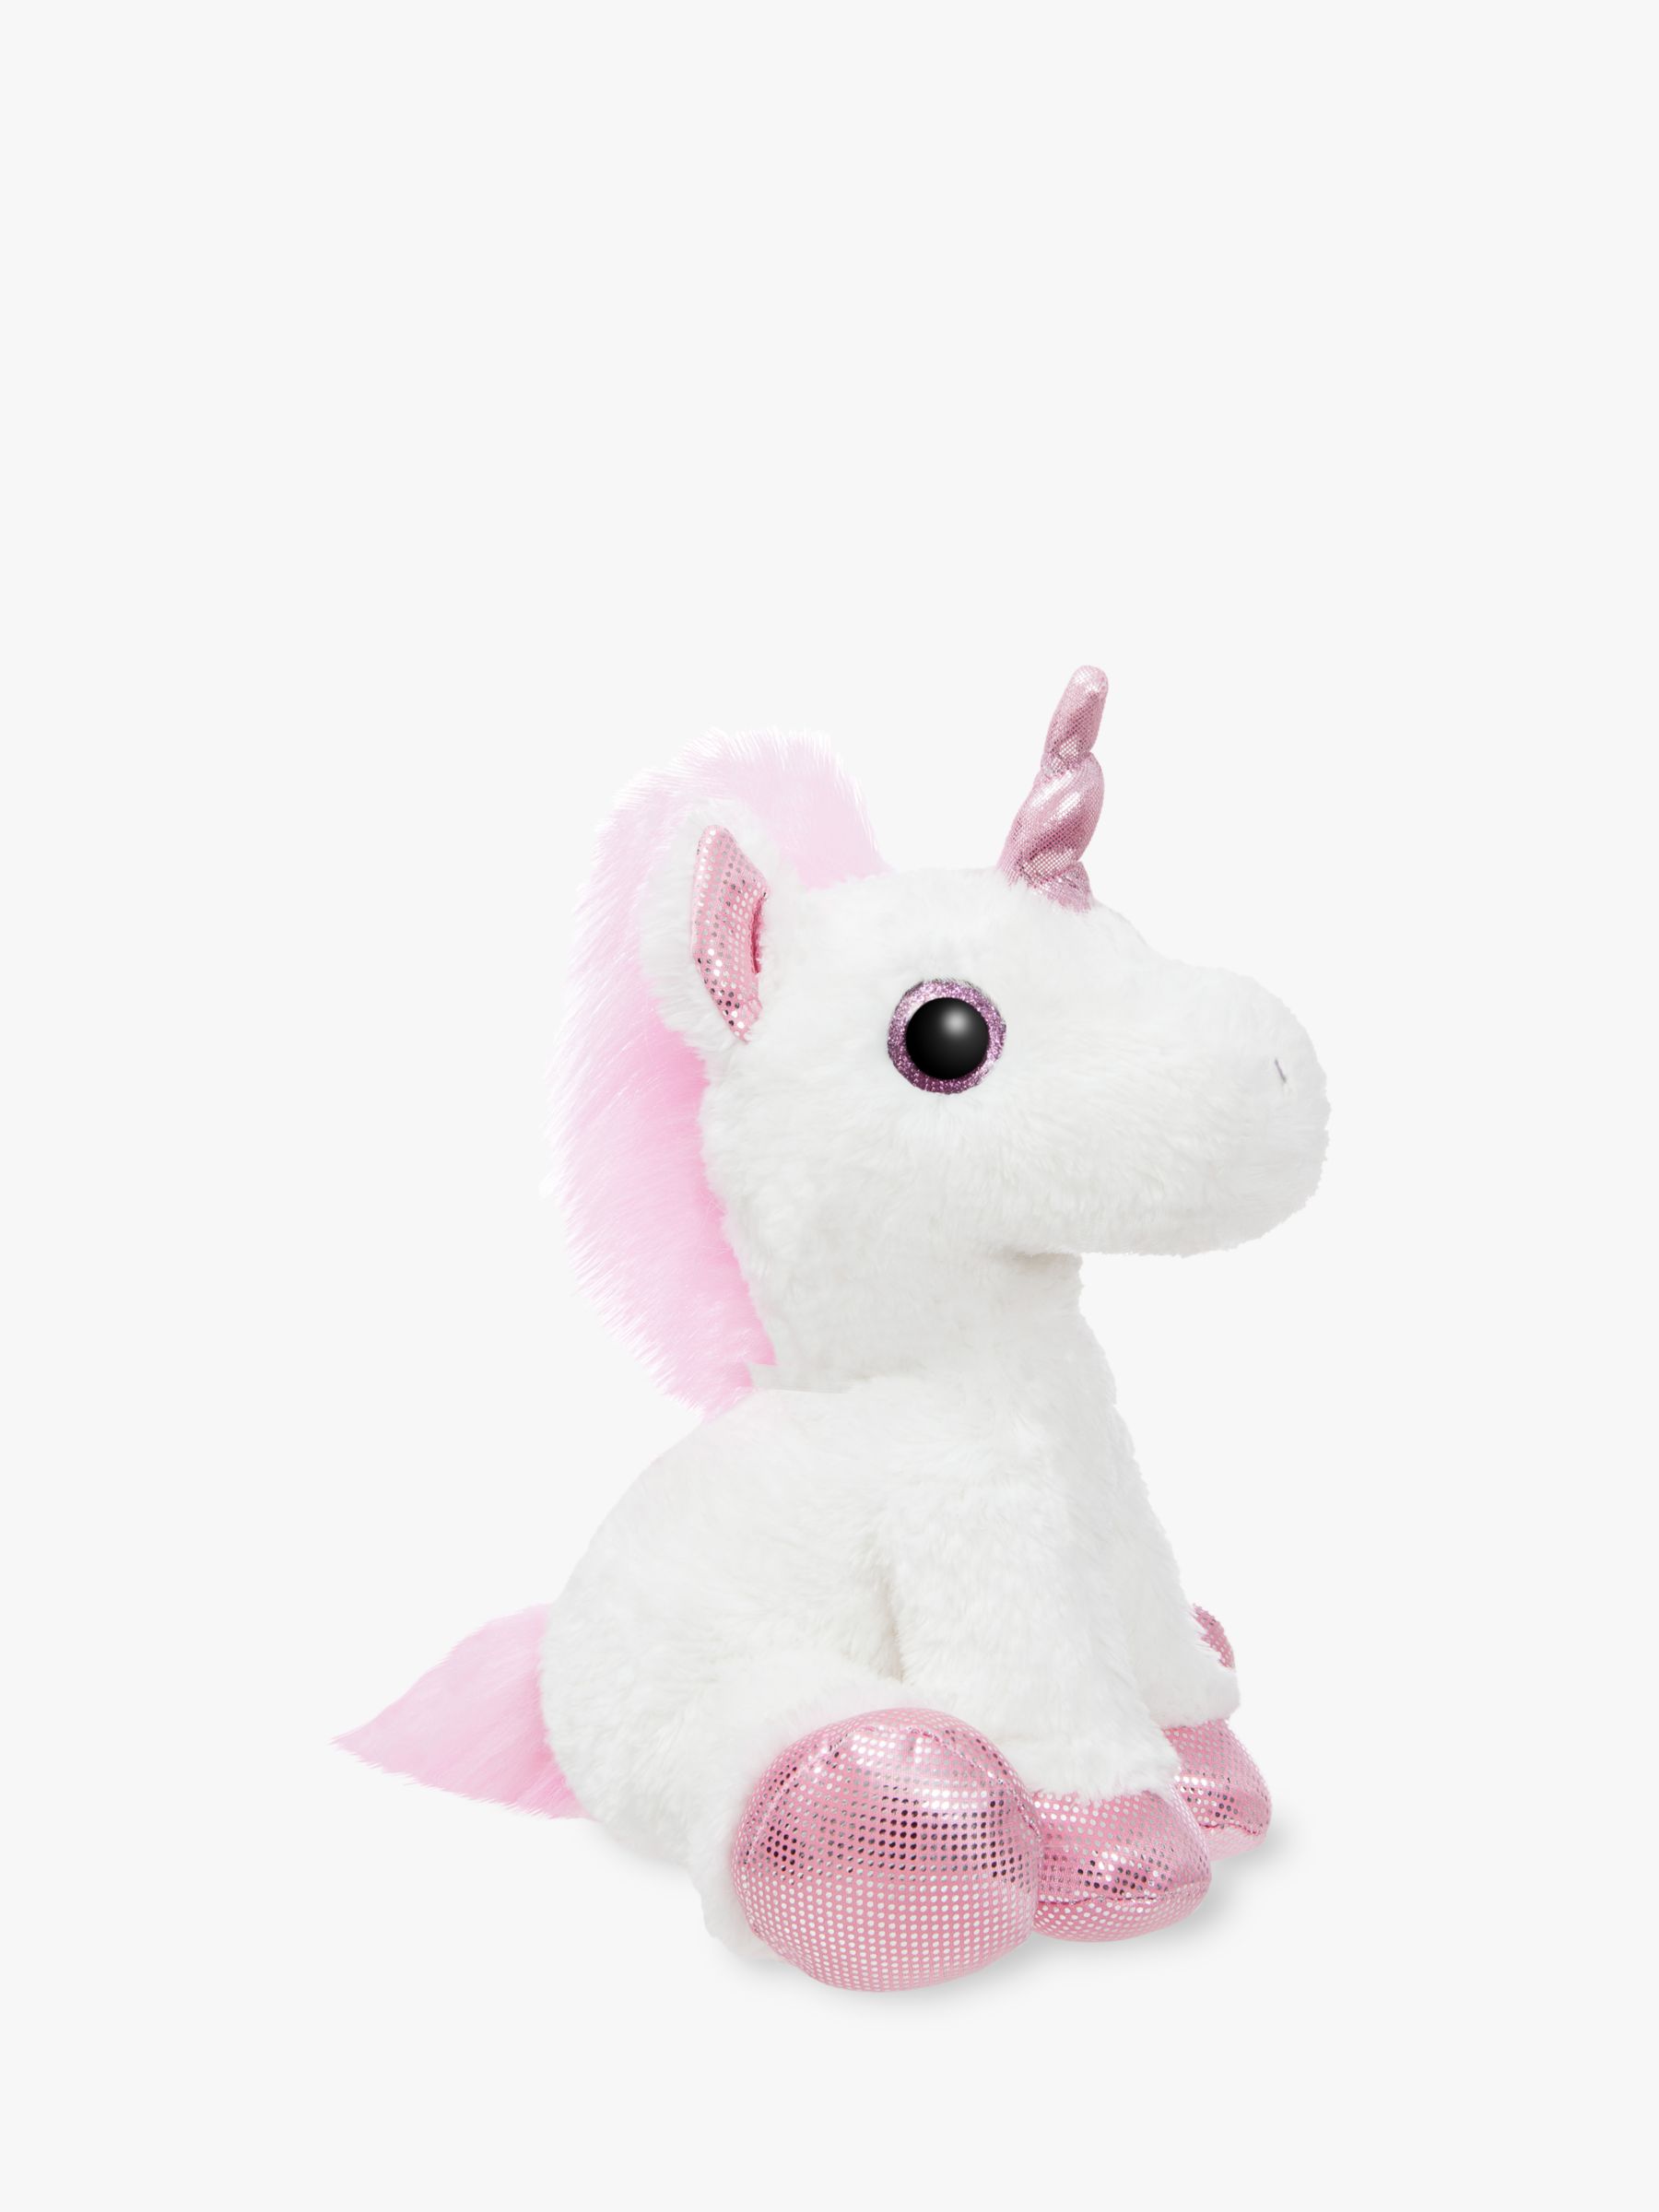 buy unicorn soft toy online